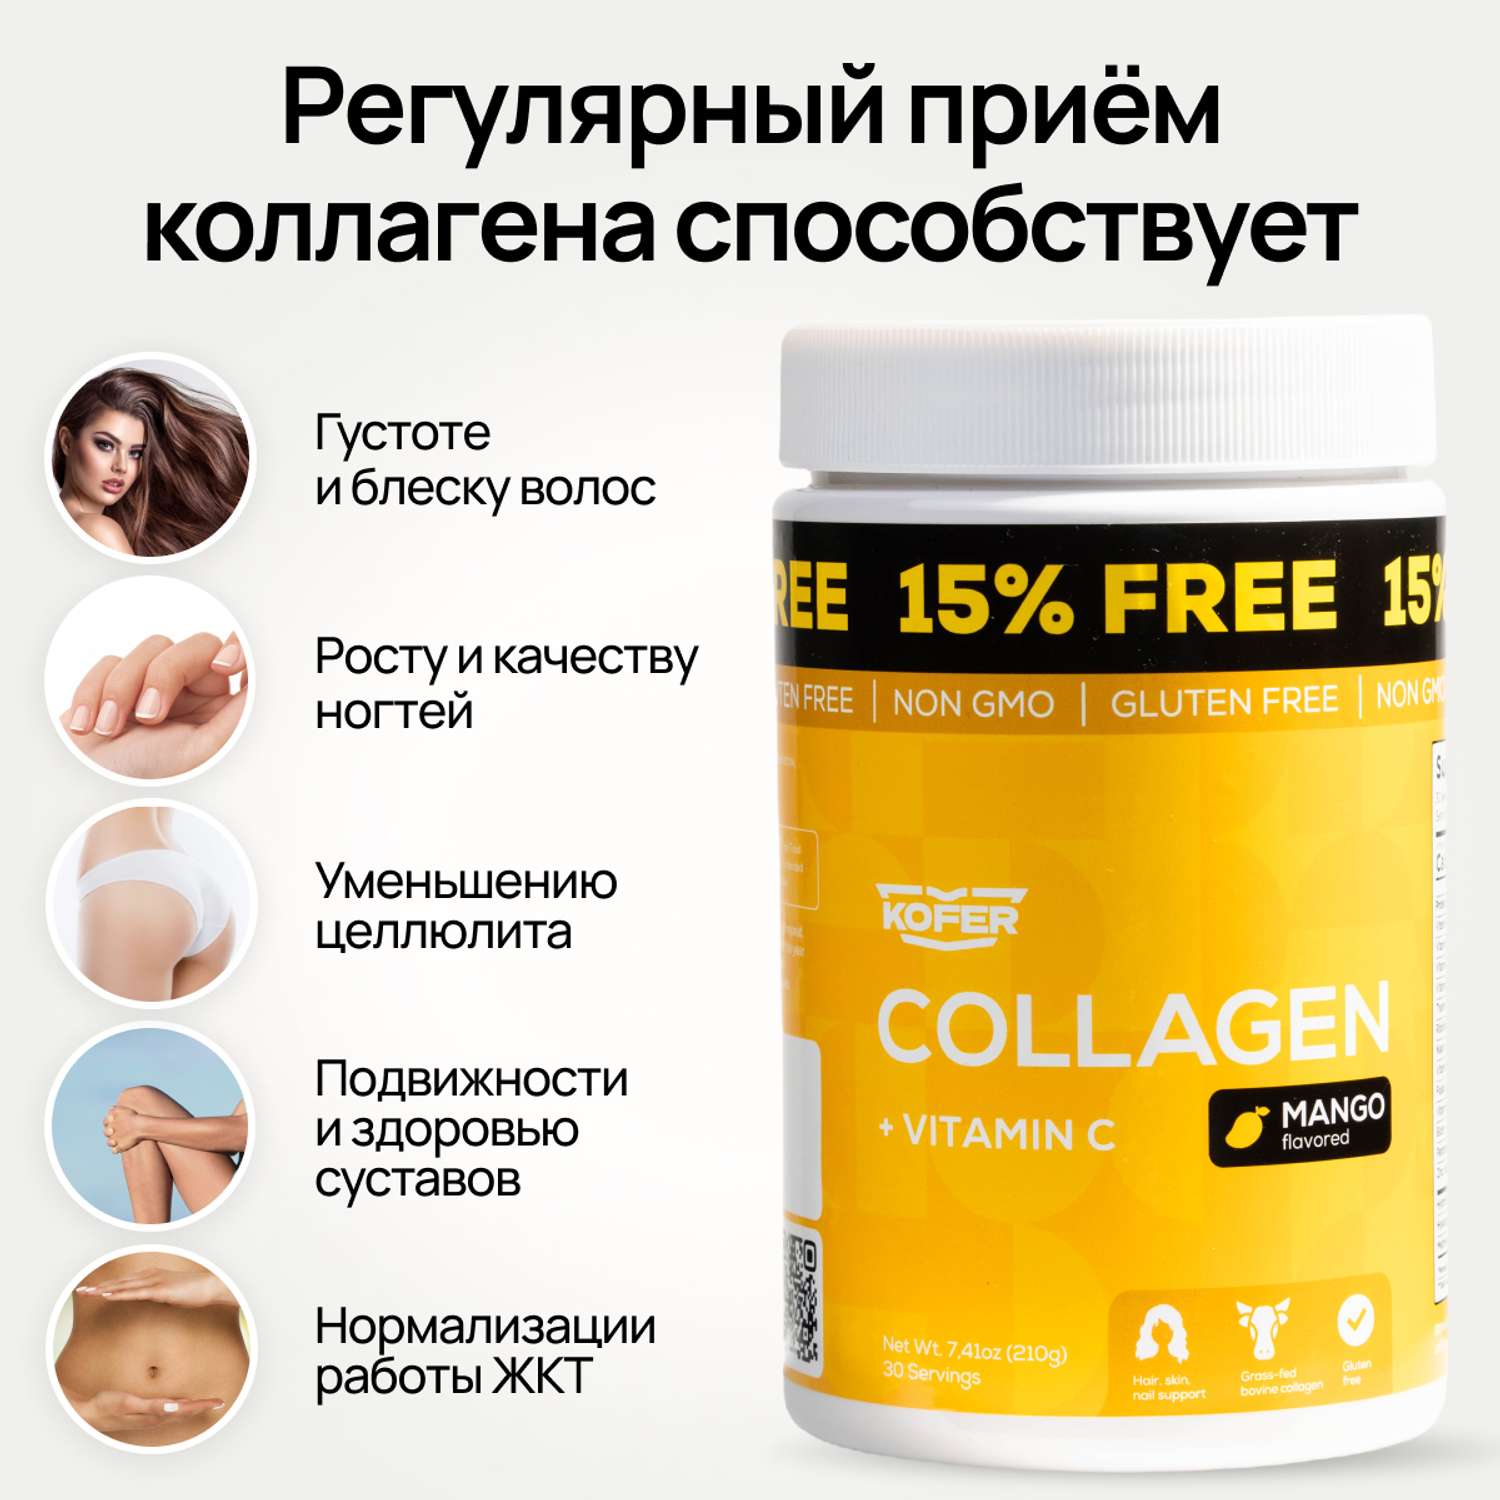 Коллаген KOFER порошок с витамином С со вкусом МАНГО для суставов кожи и волос 210 г - фото 4